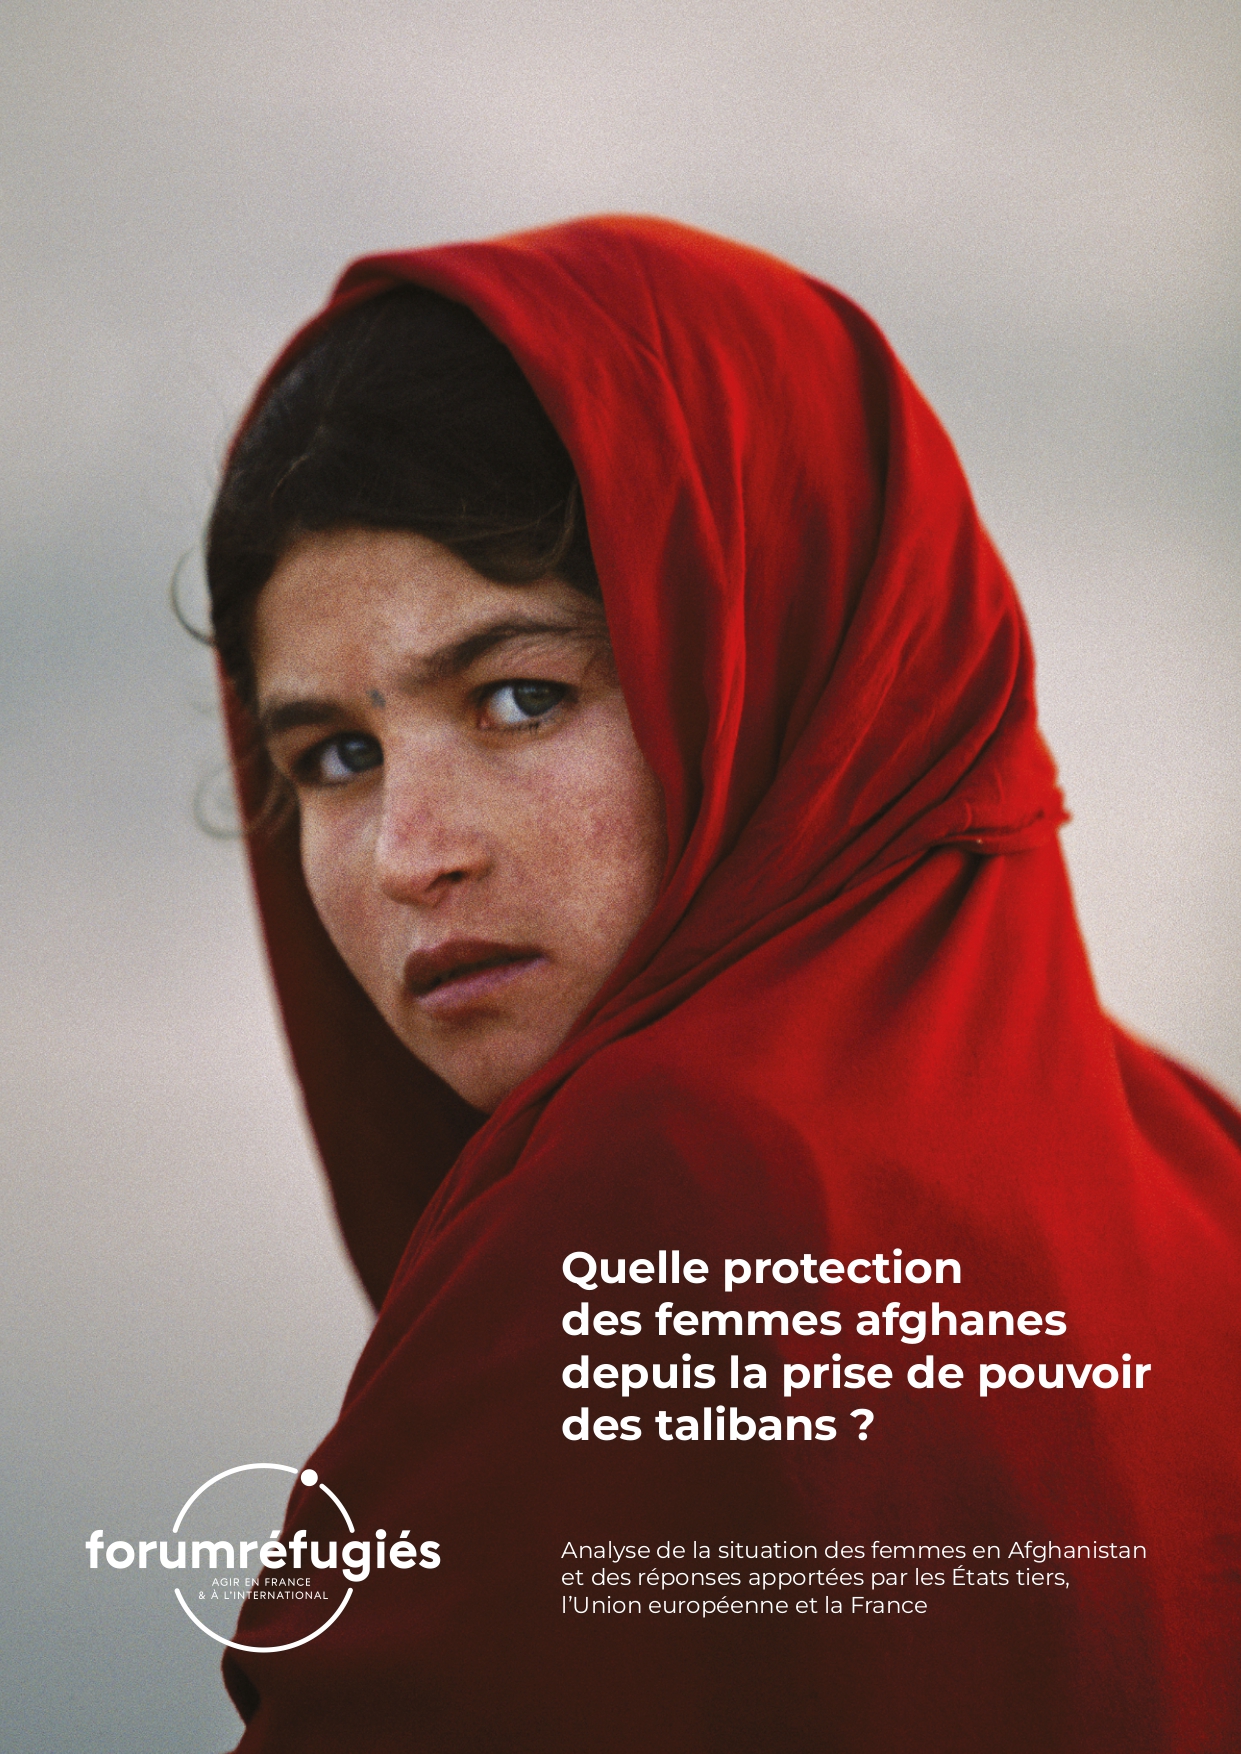 La protection internationale des femmes afghanes doit être renforcée, selon un rapport publié par Forum réfugiés 